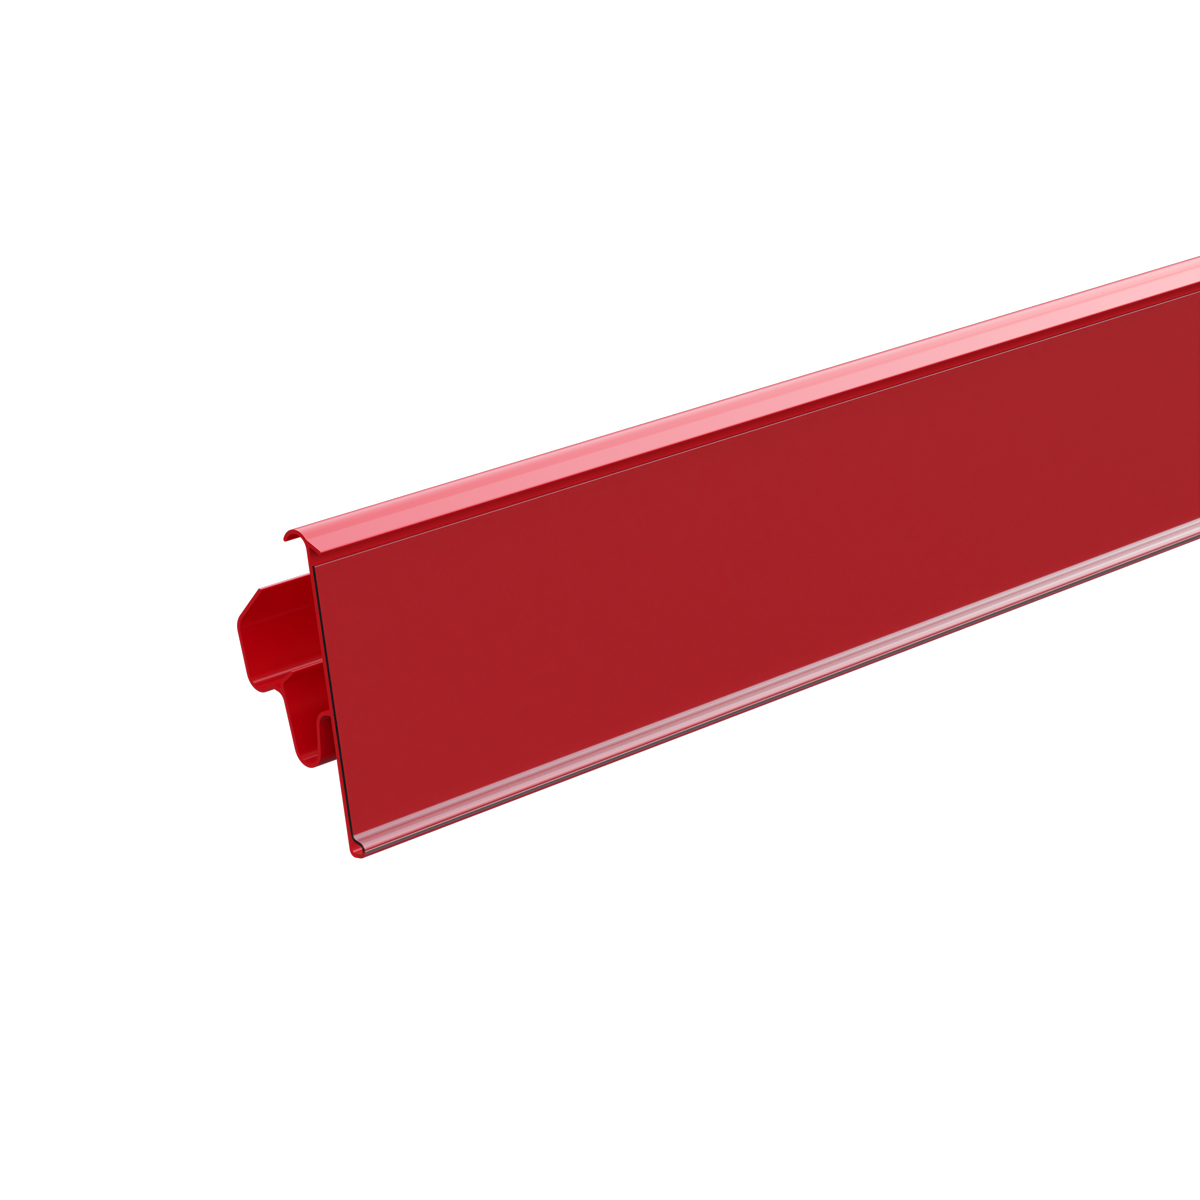 Ценникодержатель двухпозиционный LST39 длина 1238 мм., цвет красный (10 шт в упаковке)